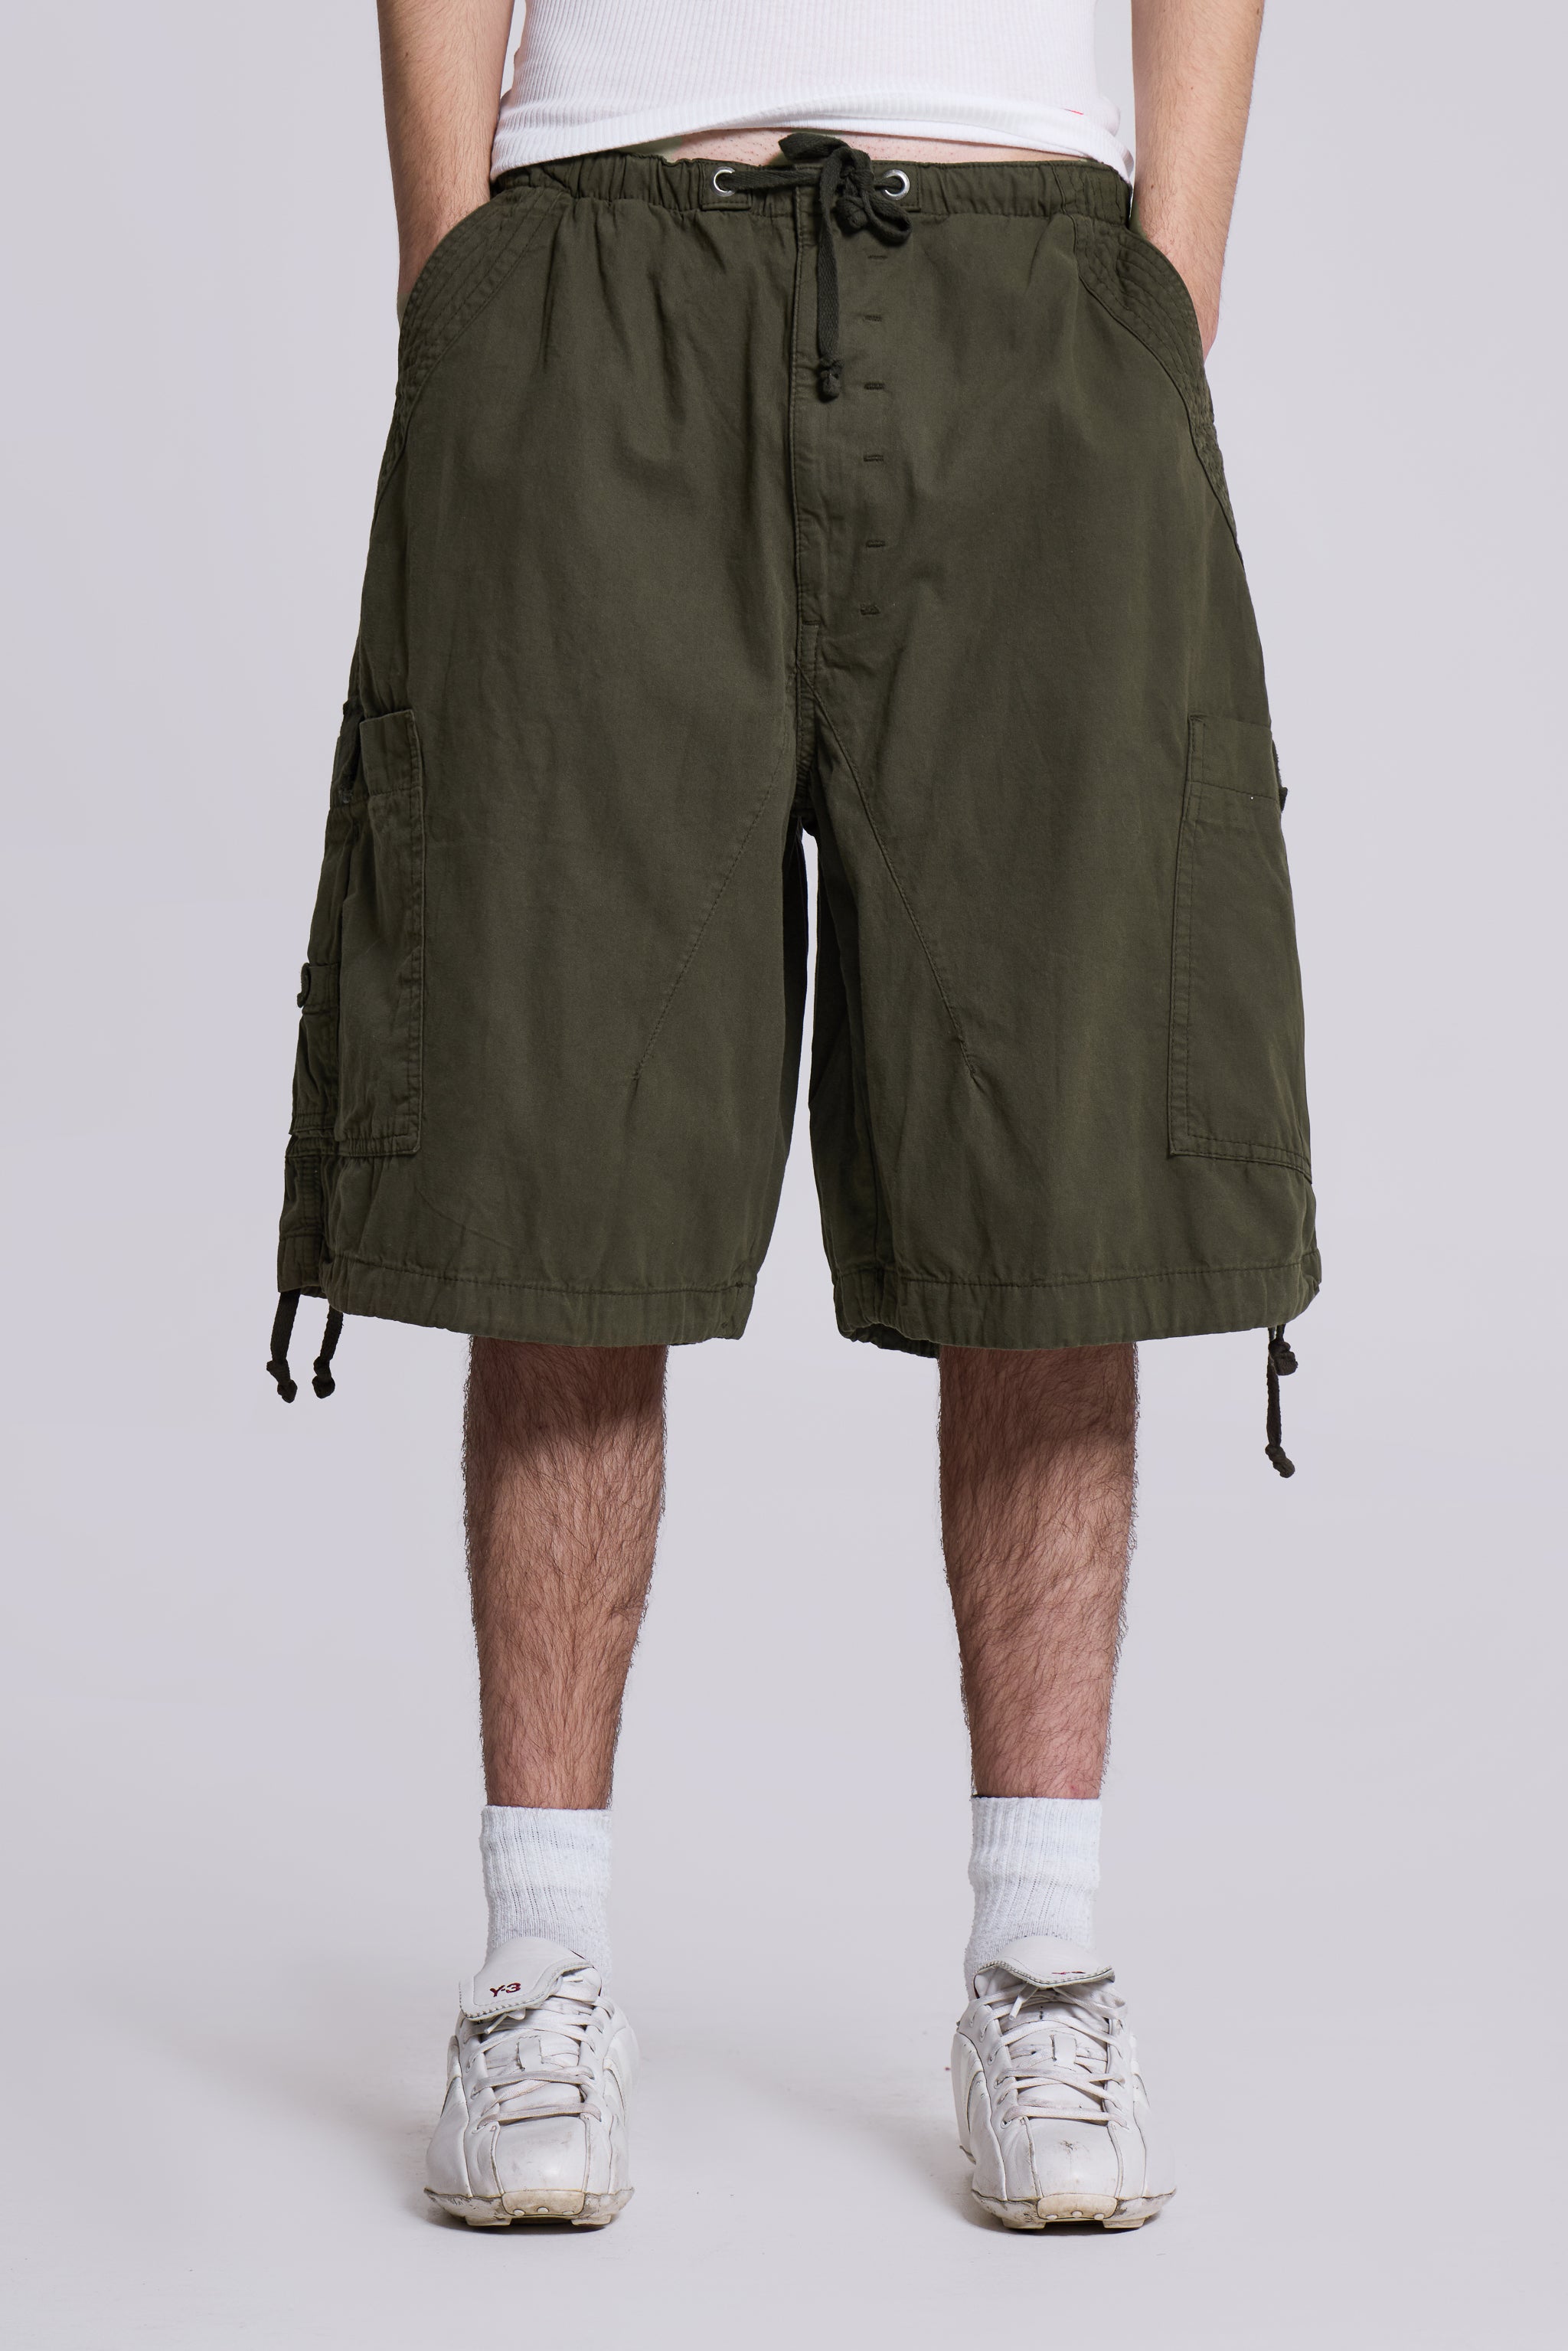 Jaded Man Khaki Parachute Cargo Shorts